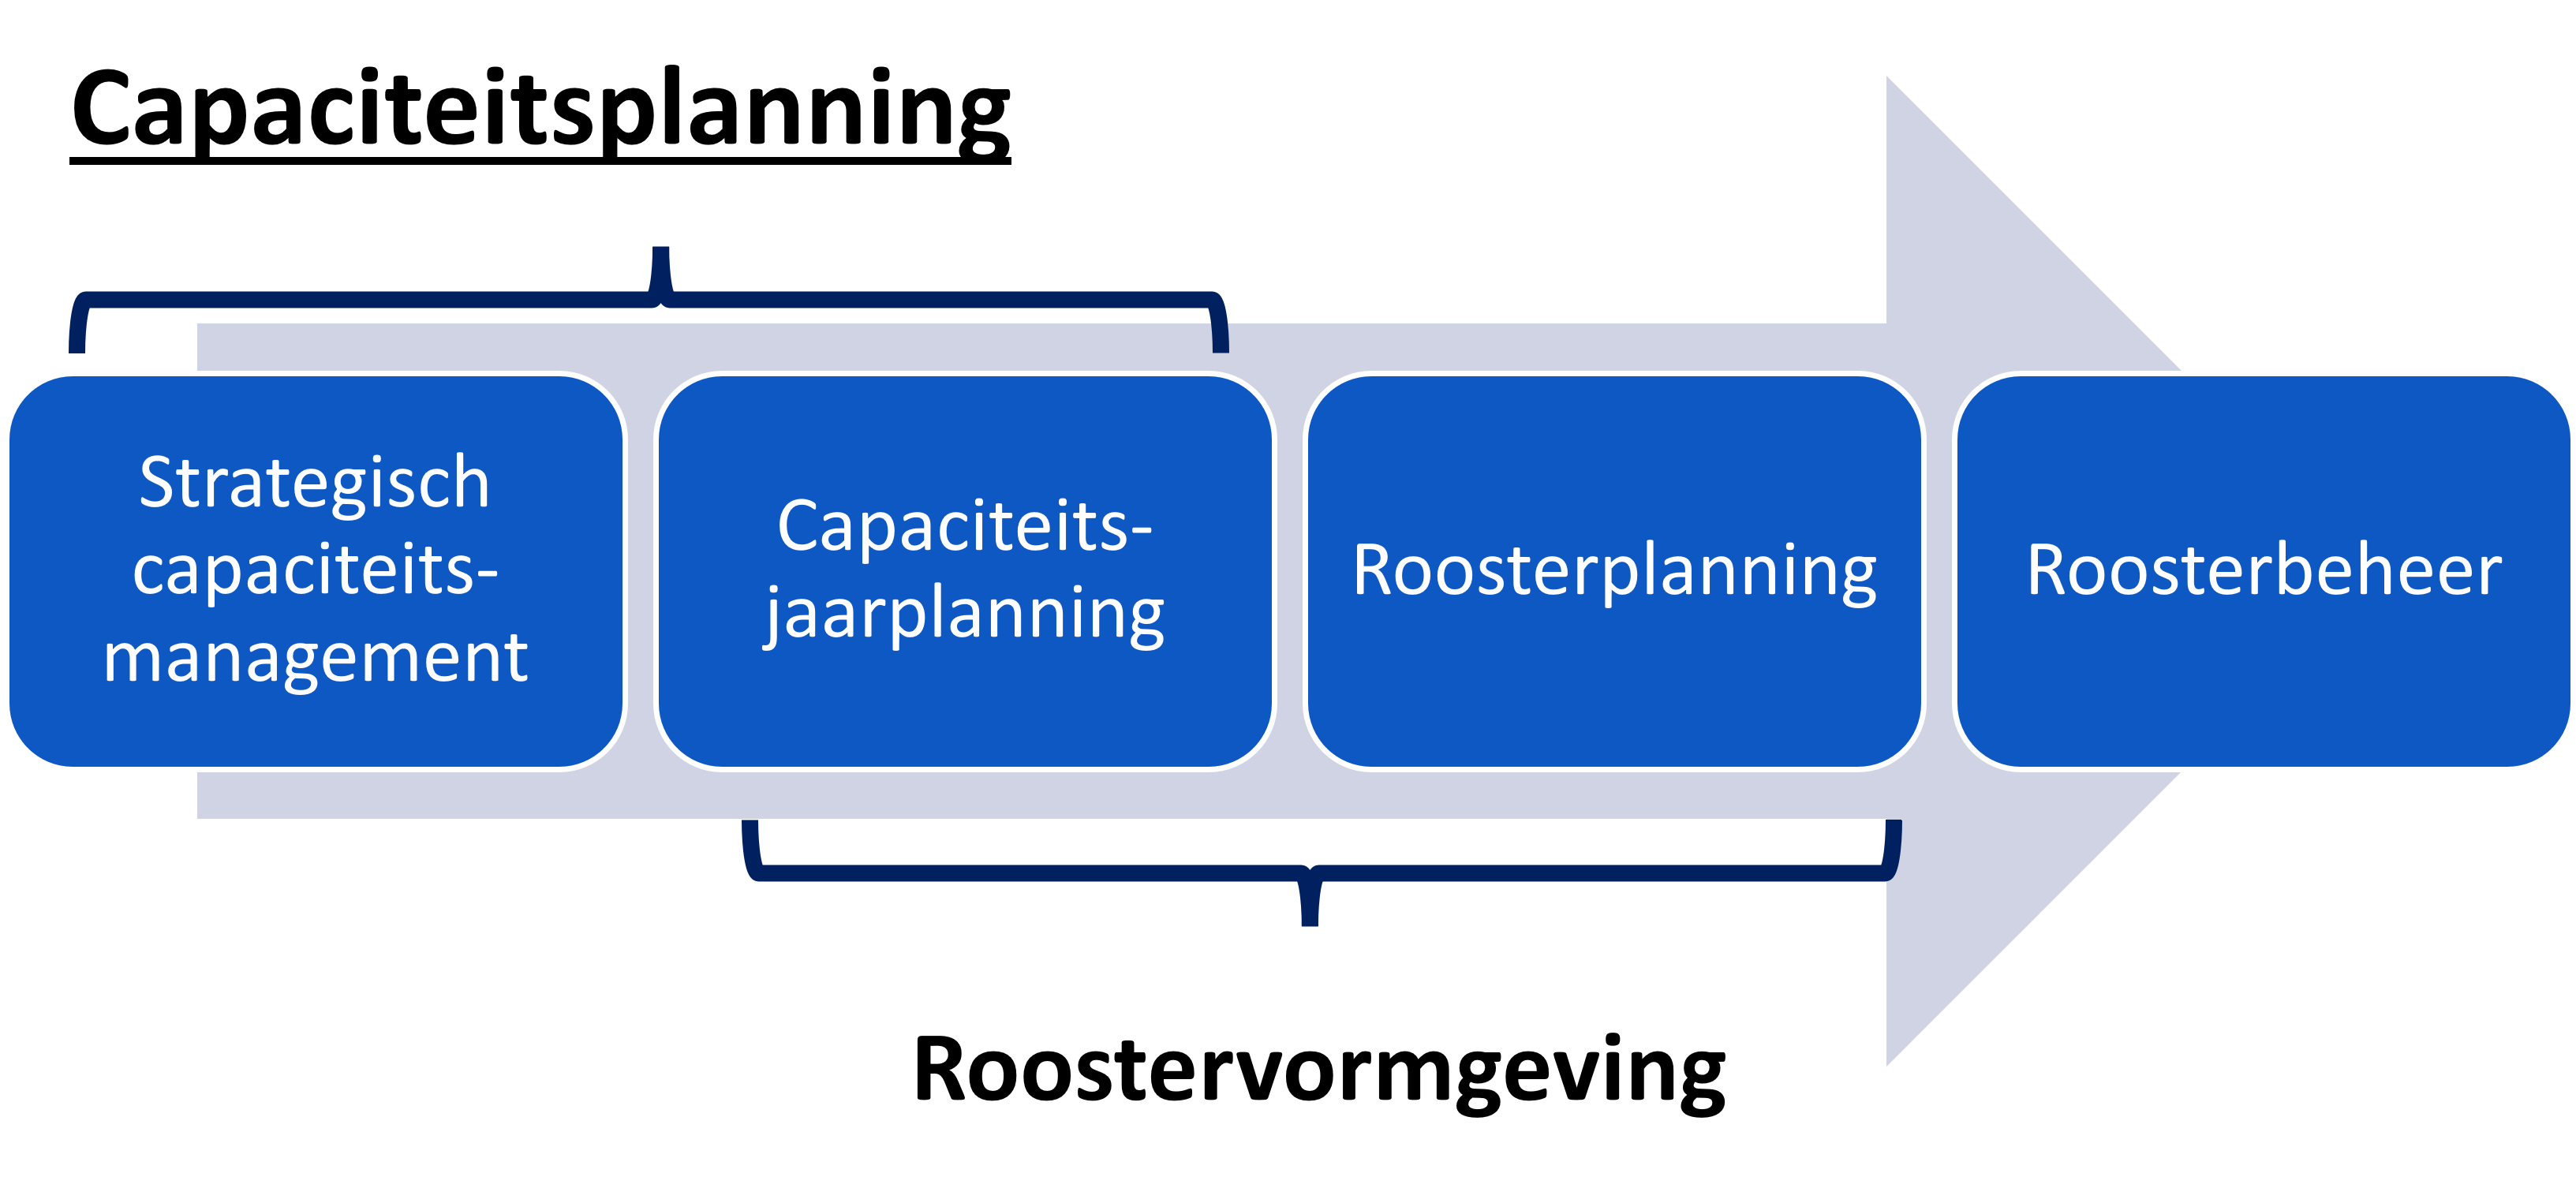 Het personeelsplanningsproces in vier stappen: Strategisch capaciteitsmanagement, Capaciteitsjaarplanning, Roosterplanning, Roosterbeheer.